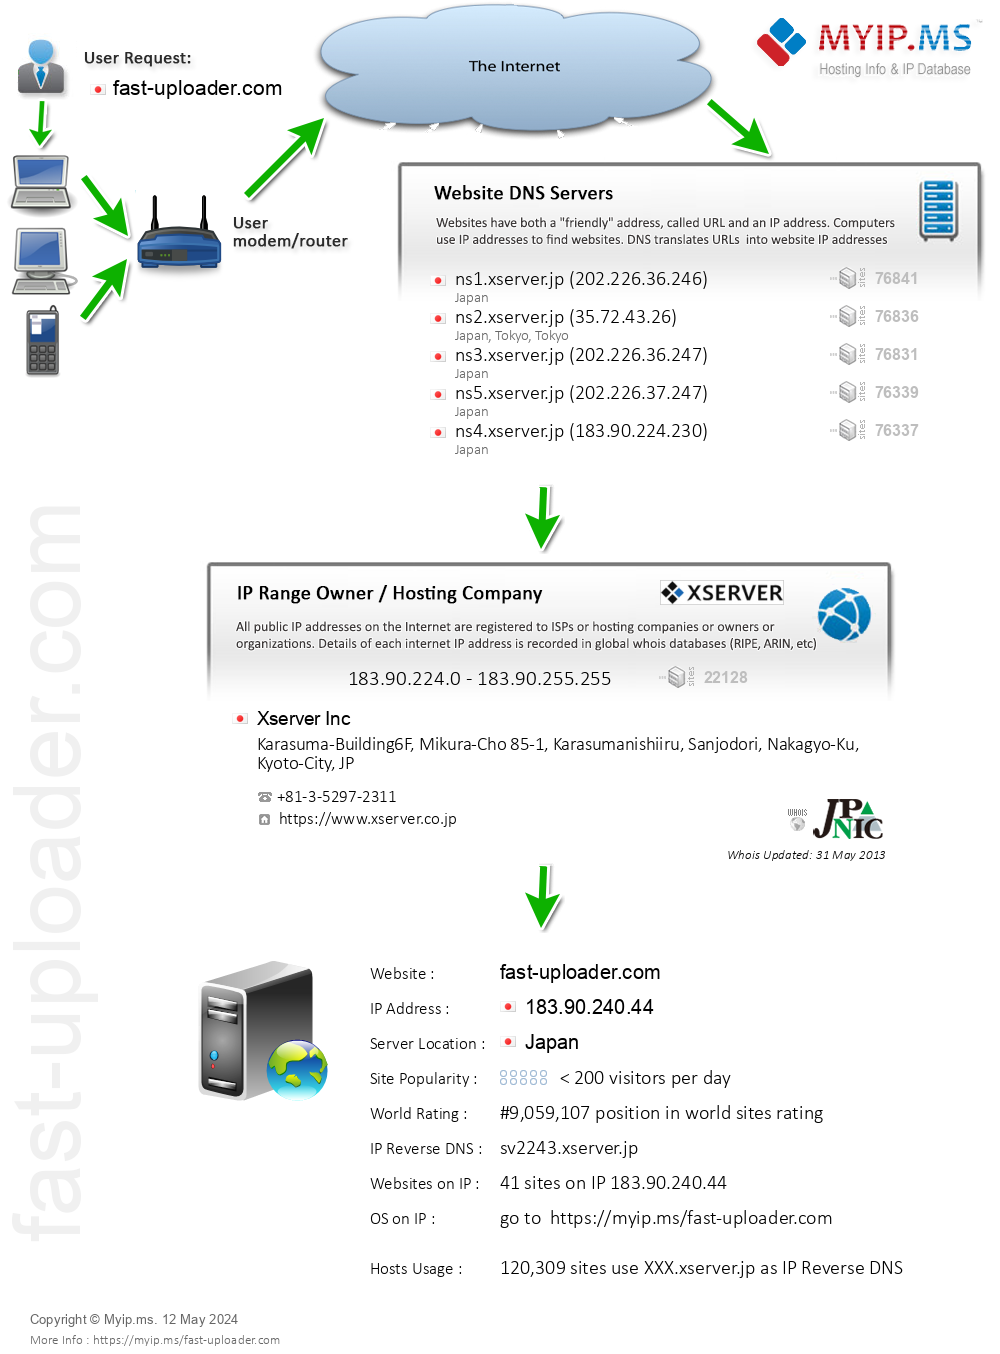 Fast-uploader.com - Website Hosting Visual IP Diagram